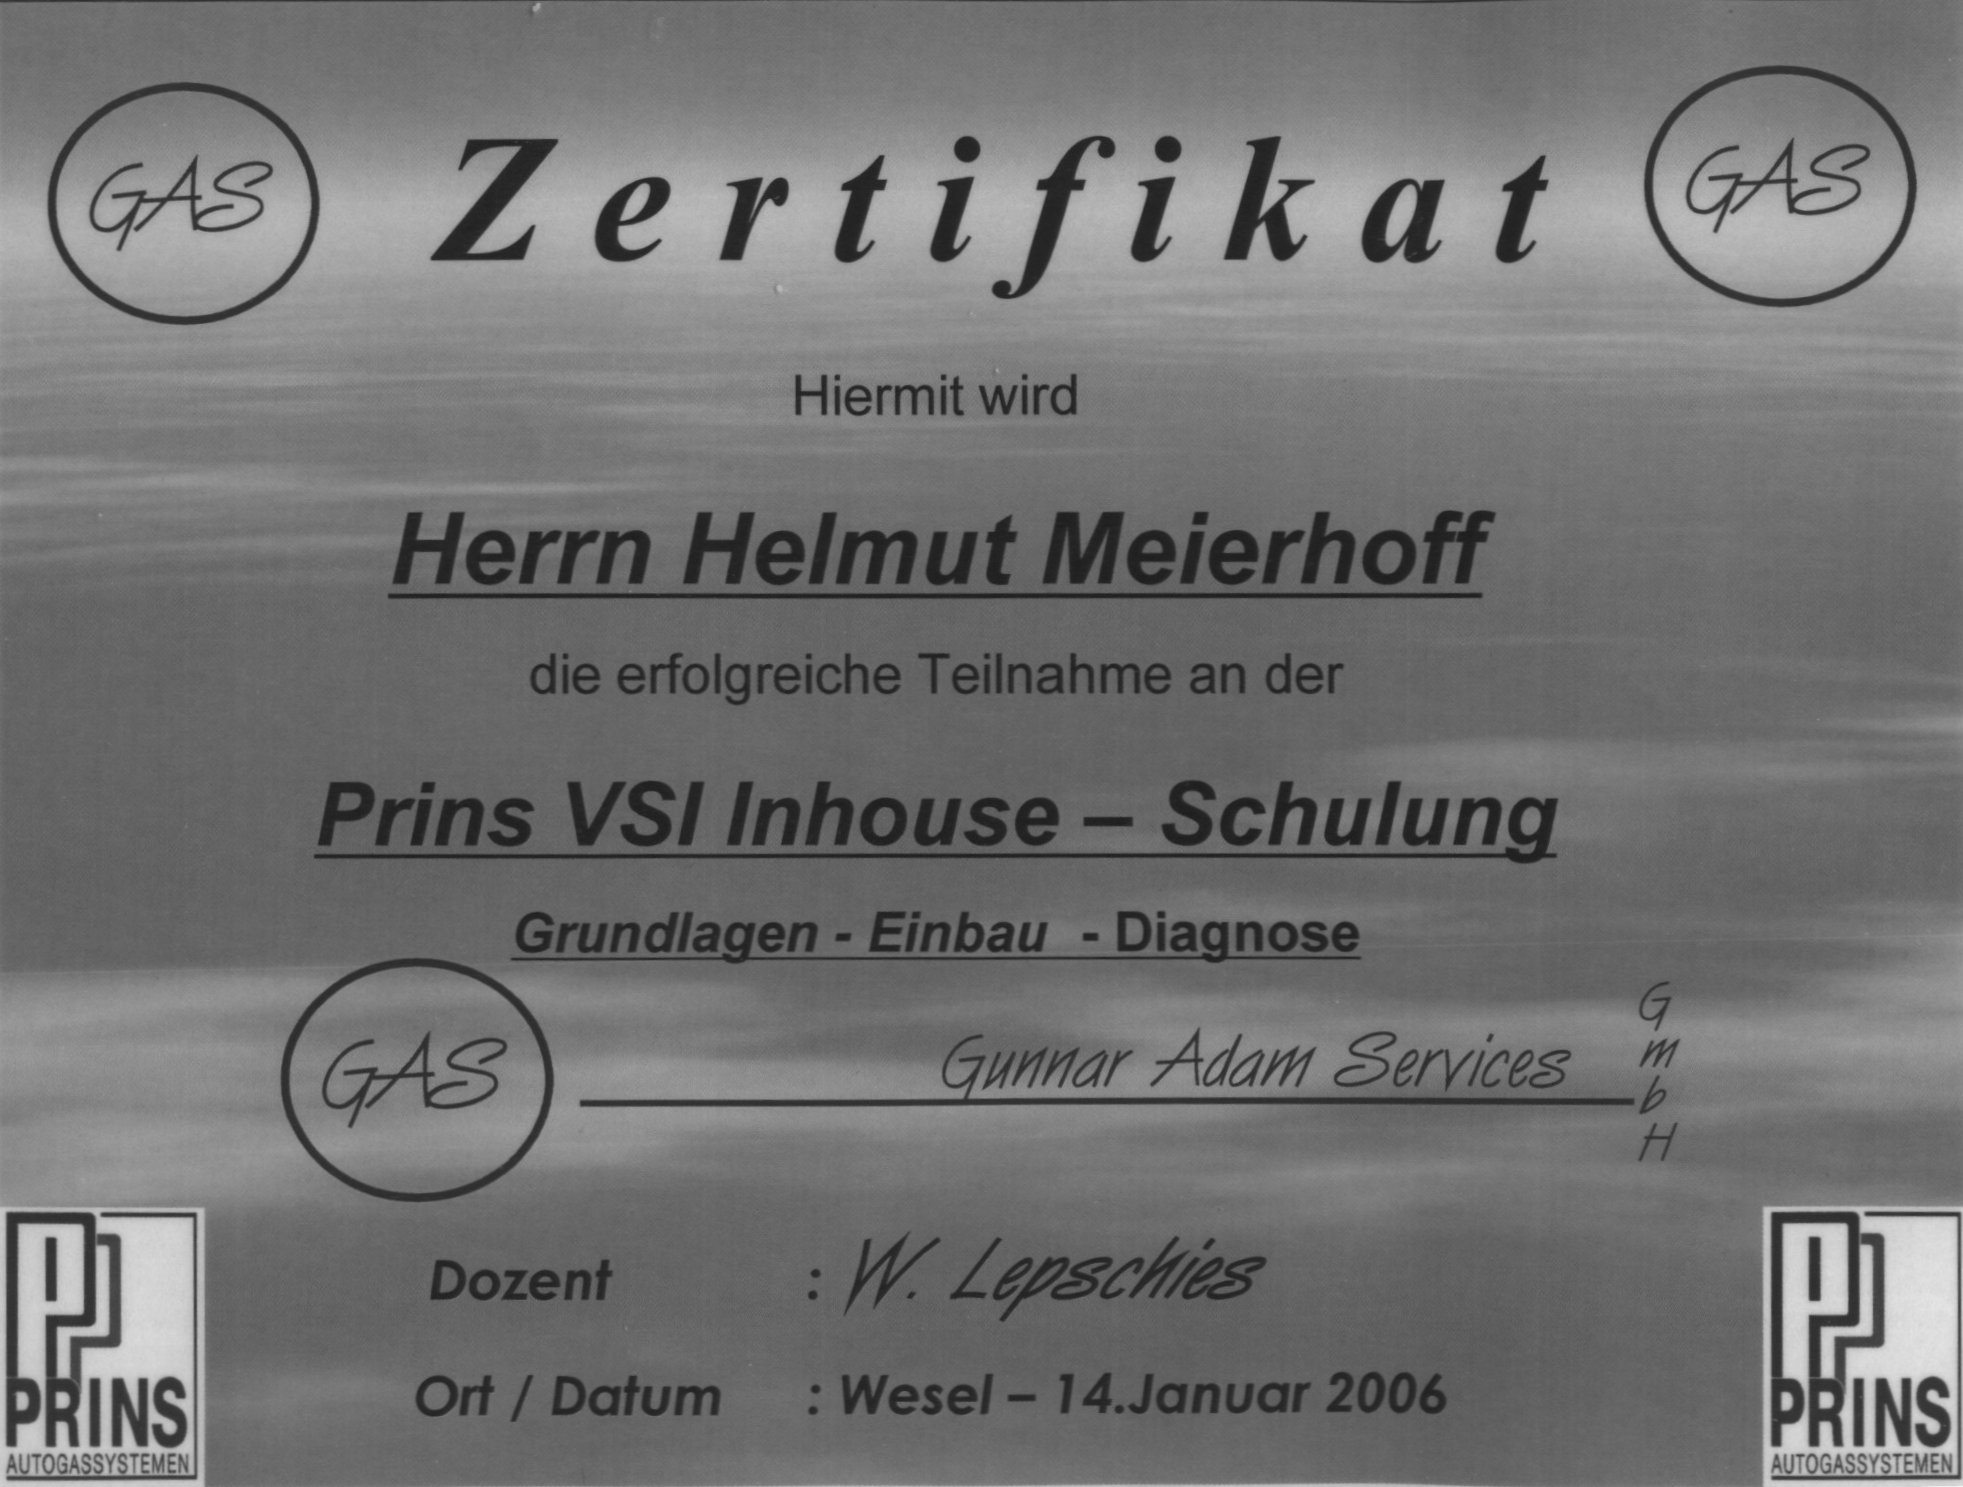 Prins-Zertifikat für Helmut Meierhoff